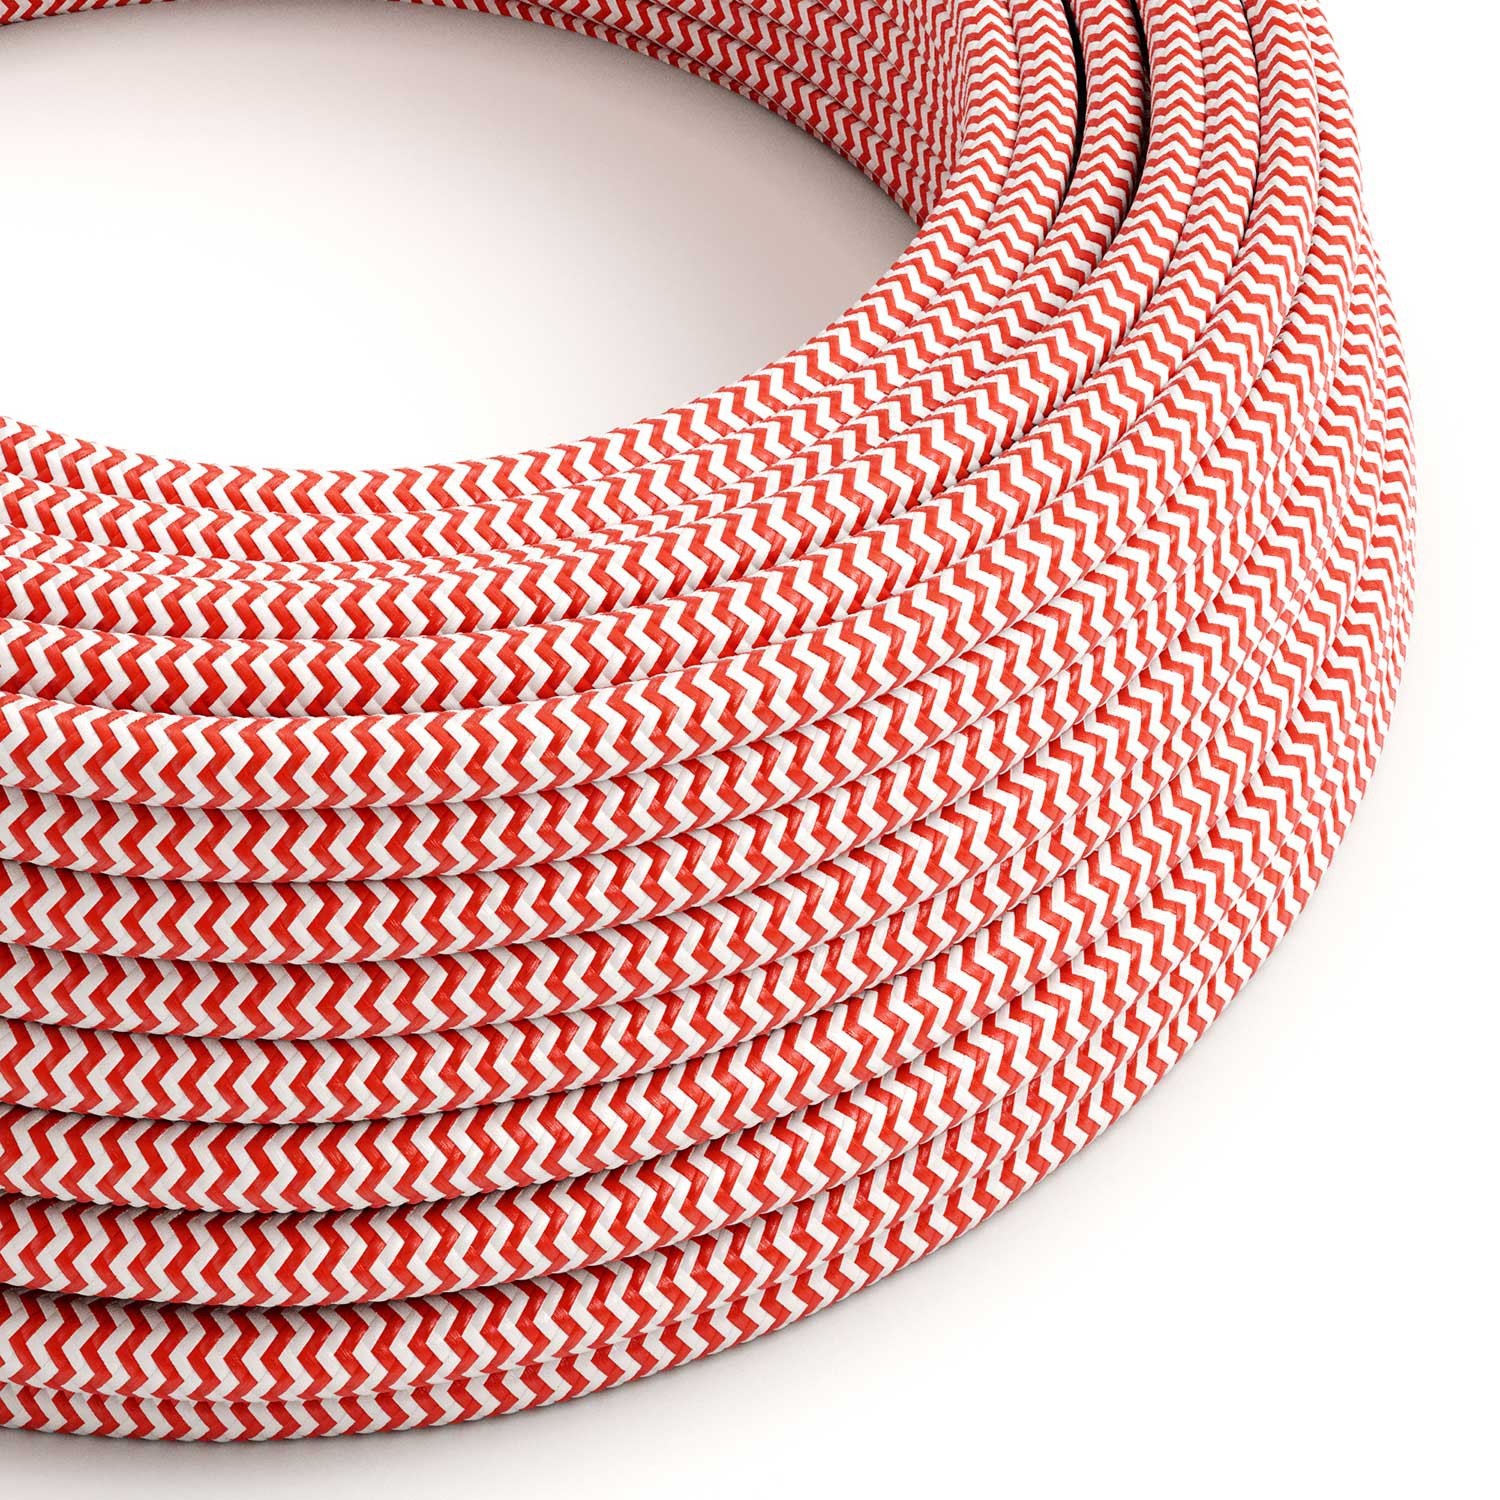 Okrugli tekstilni električni kabel RZ09 - crvena